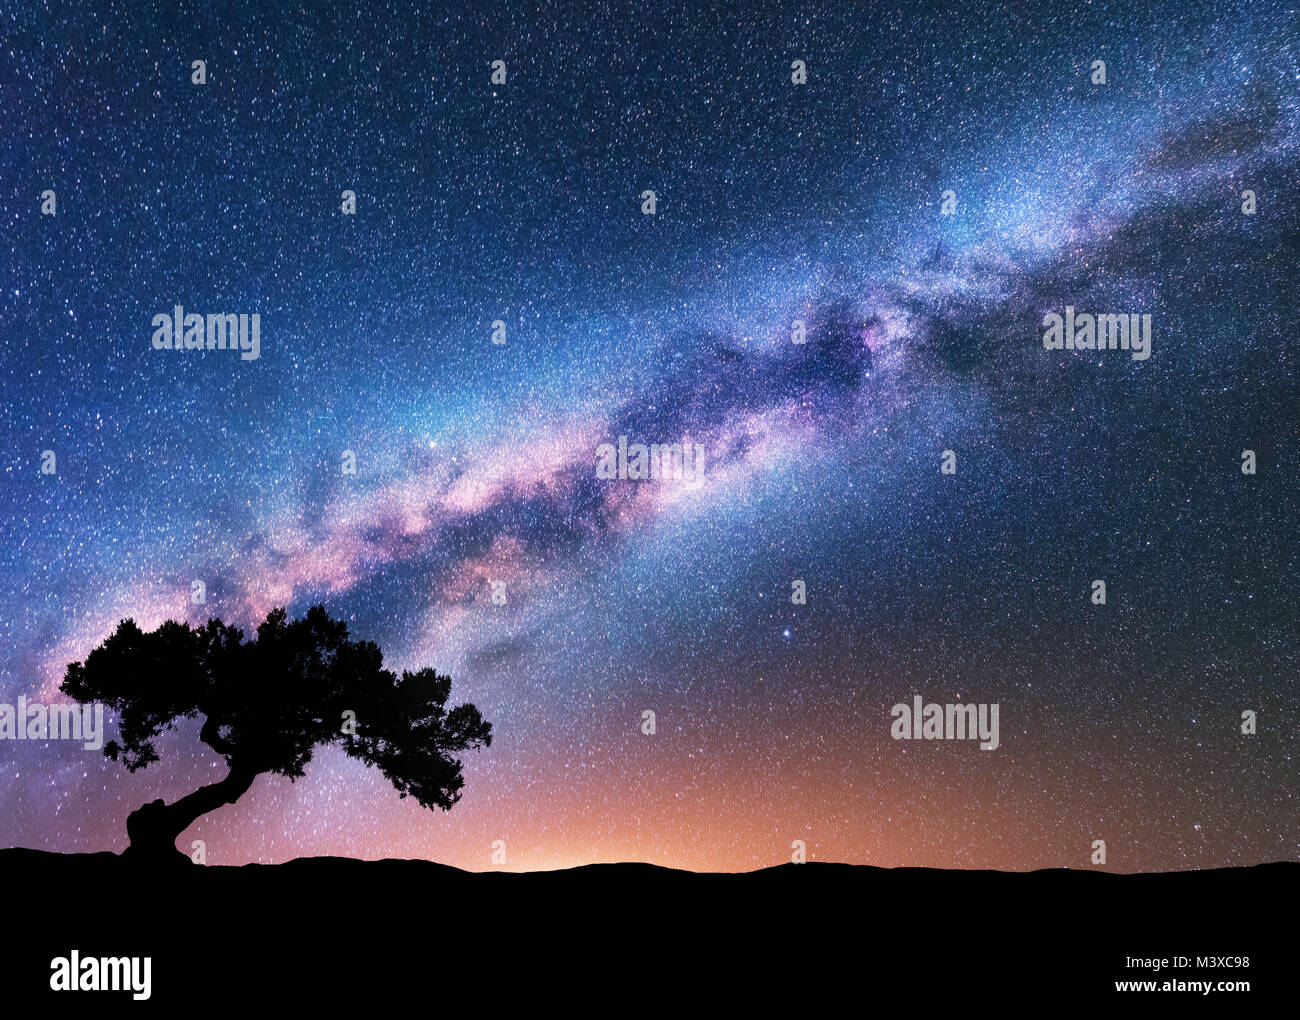 Voie Lactée avec crooked tree vieux seul sur la colline. Paysage de nuit avec des voie lactée, ciel étoilé, arbre, lumière jaune en été. Bac d'espace Banque D'Images